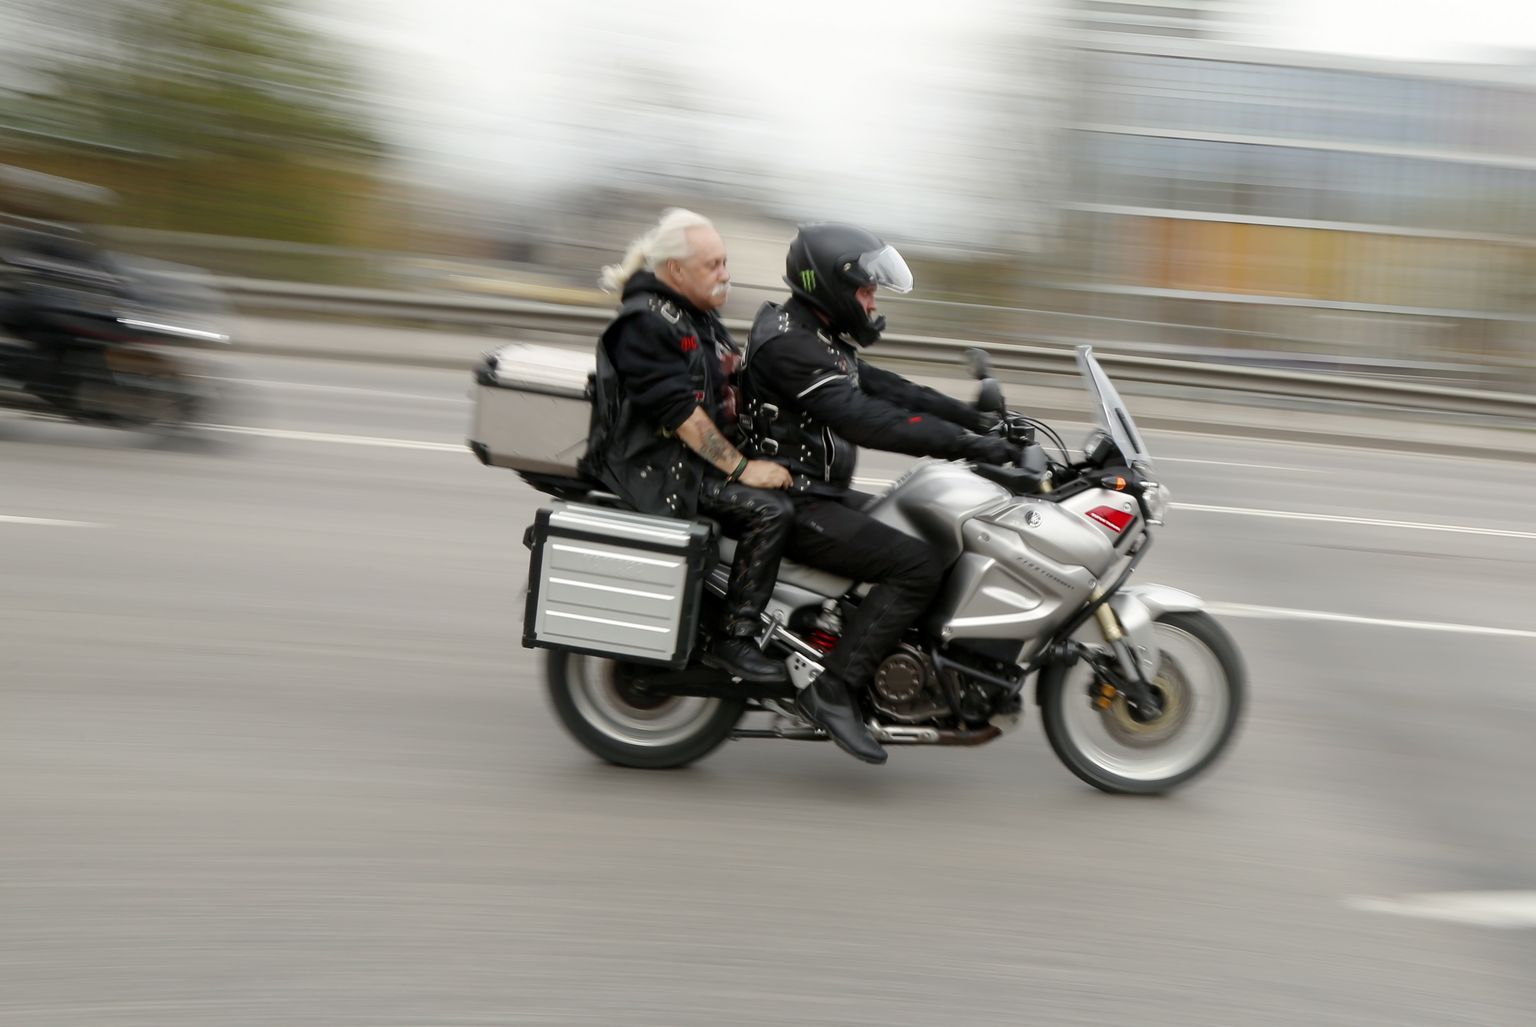 Motocikls uz Vanšu tilta. Ilustratīvs attēls